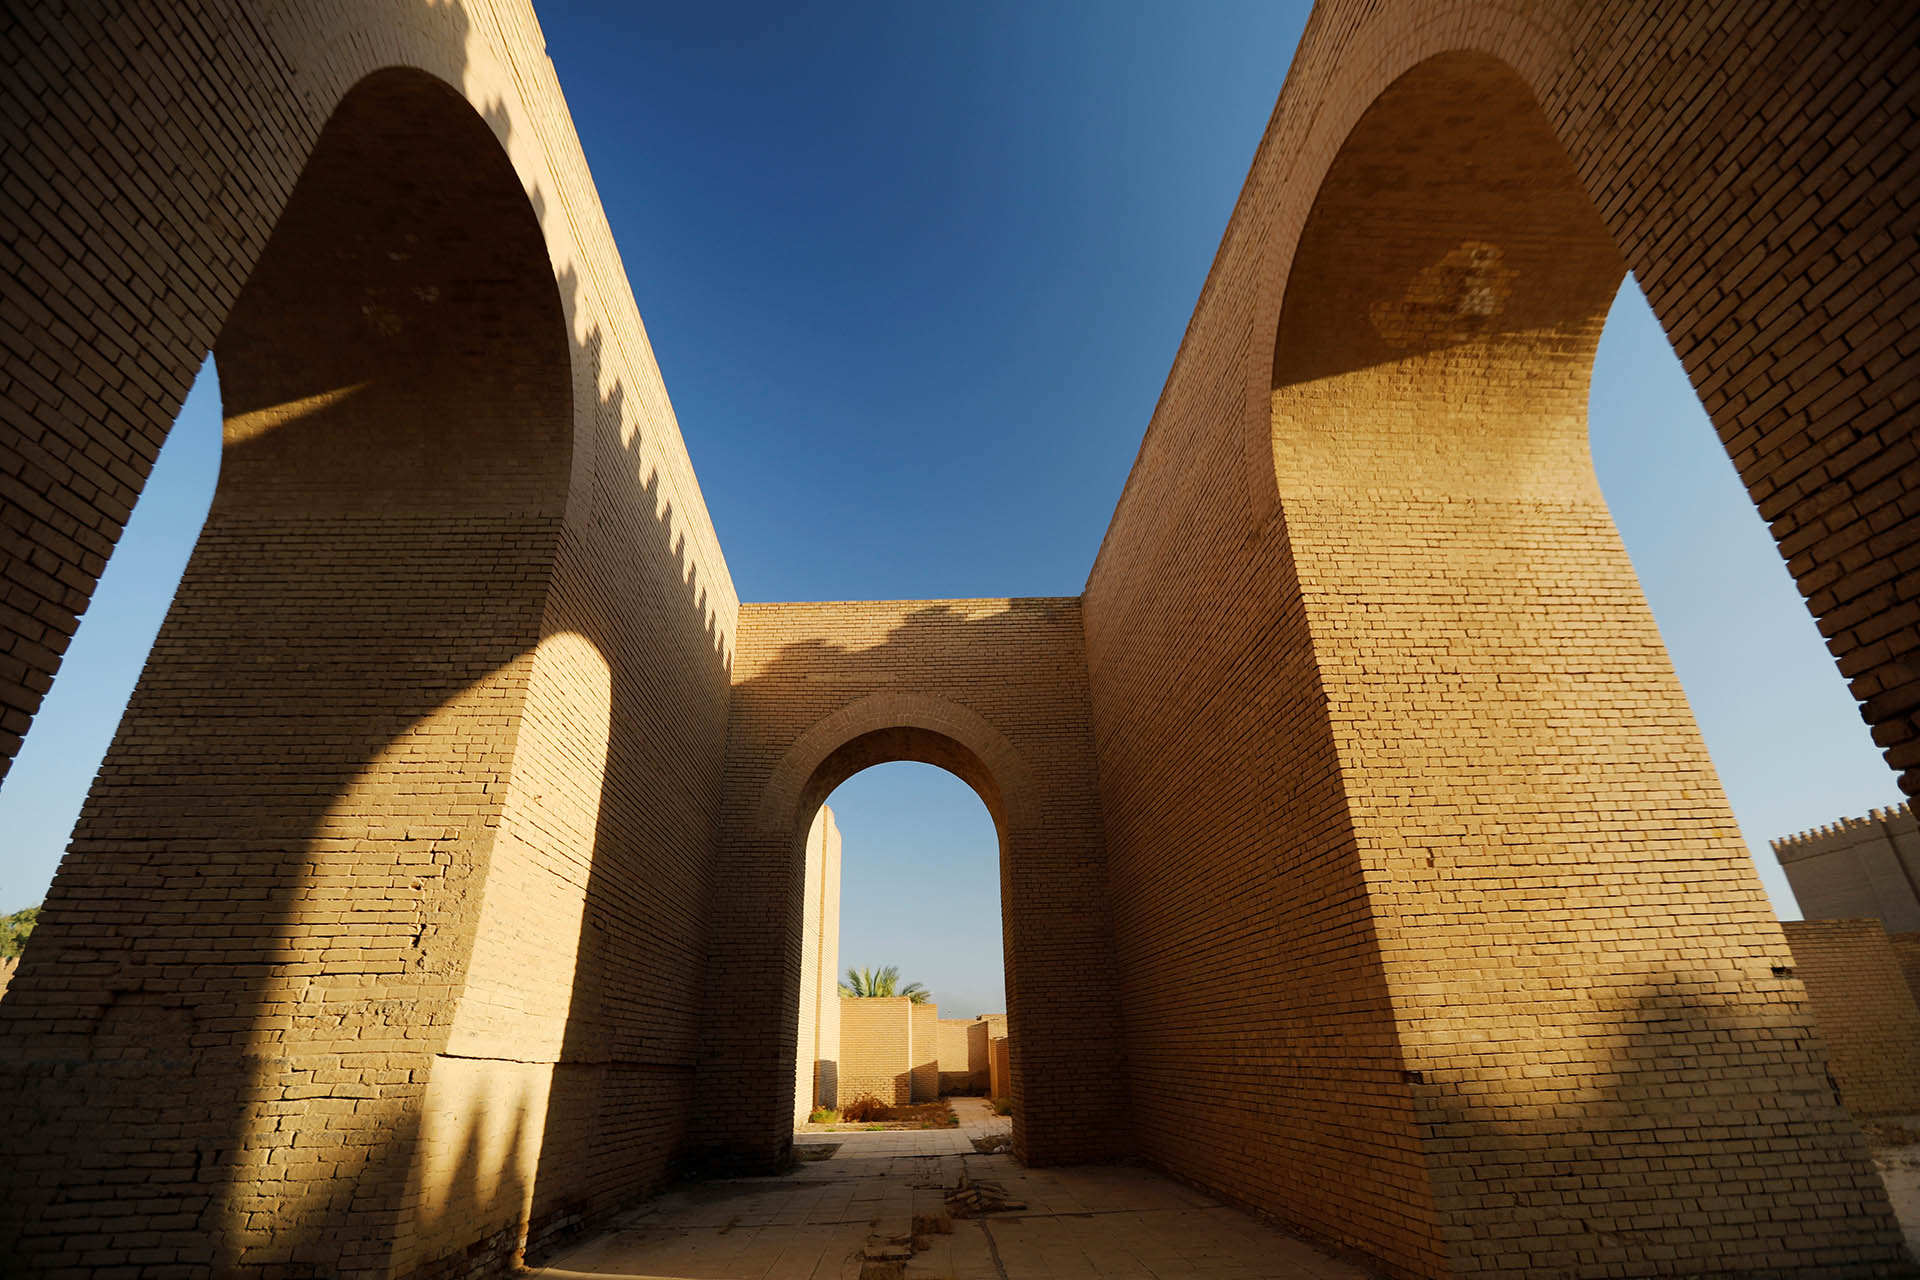 Vista general de la antigua ciudad de Babilonia cerca de Hilla, Irak, 5 de julio de 2019. REUTERS/Thaier Al-Sudani